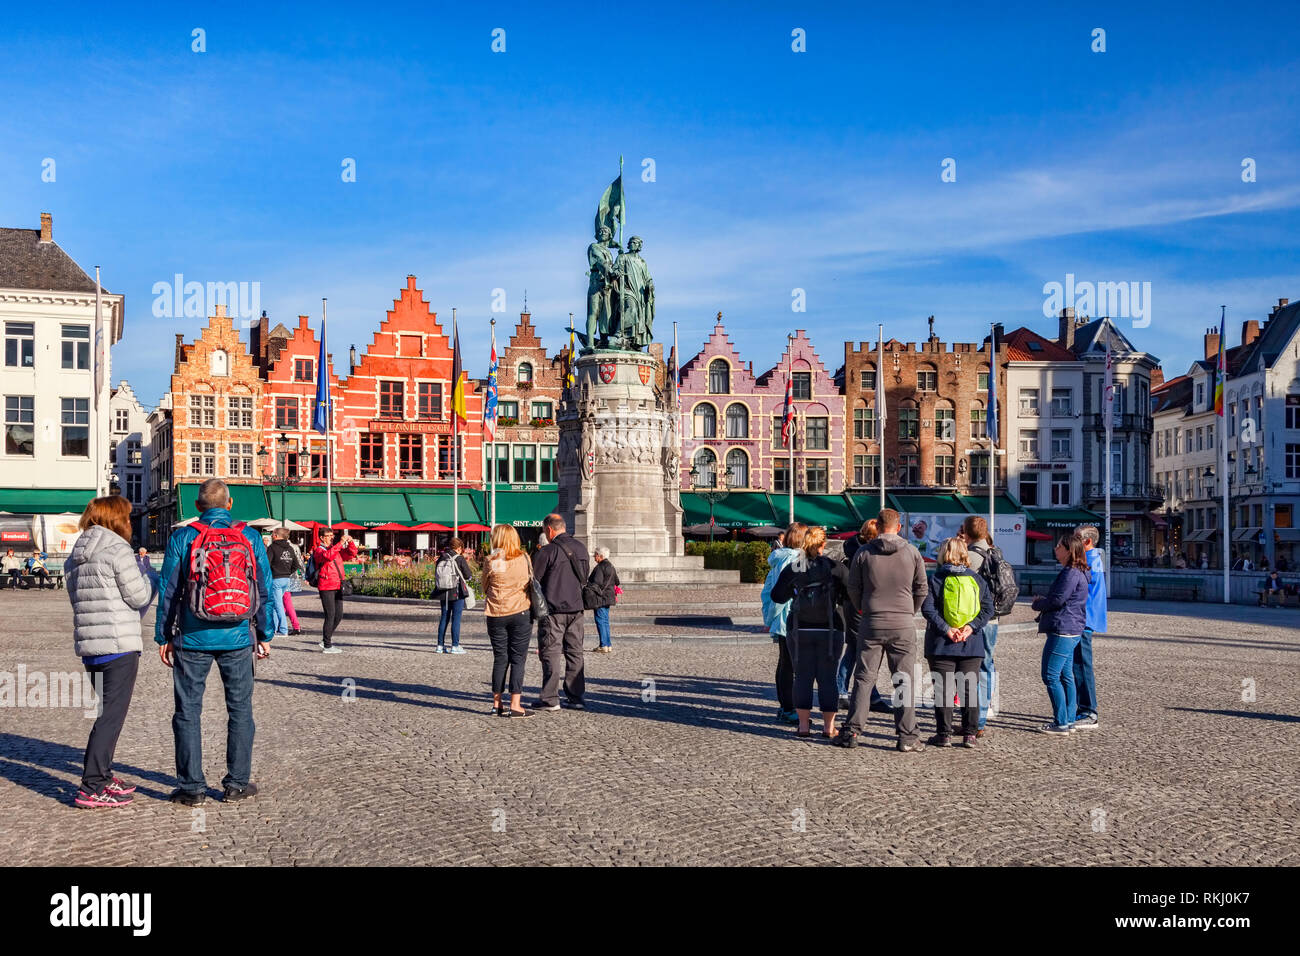 25 Settembre 2018: Bruges, Belgio - i turisti in piazza del mercato in un pomeriggio soleggiato. Foto Stock